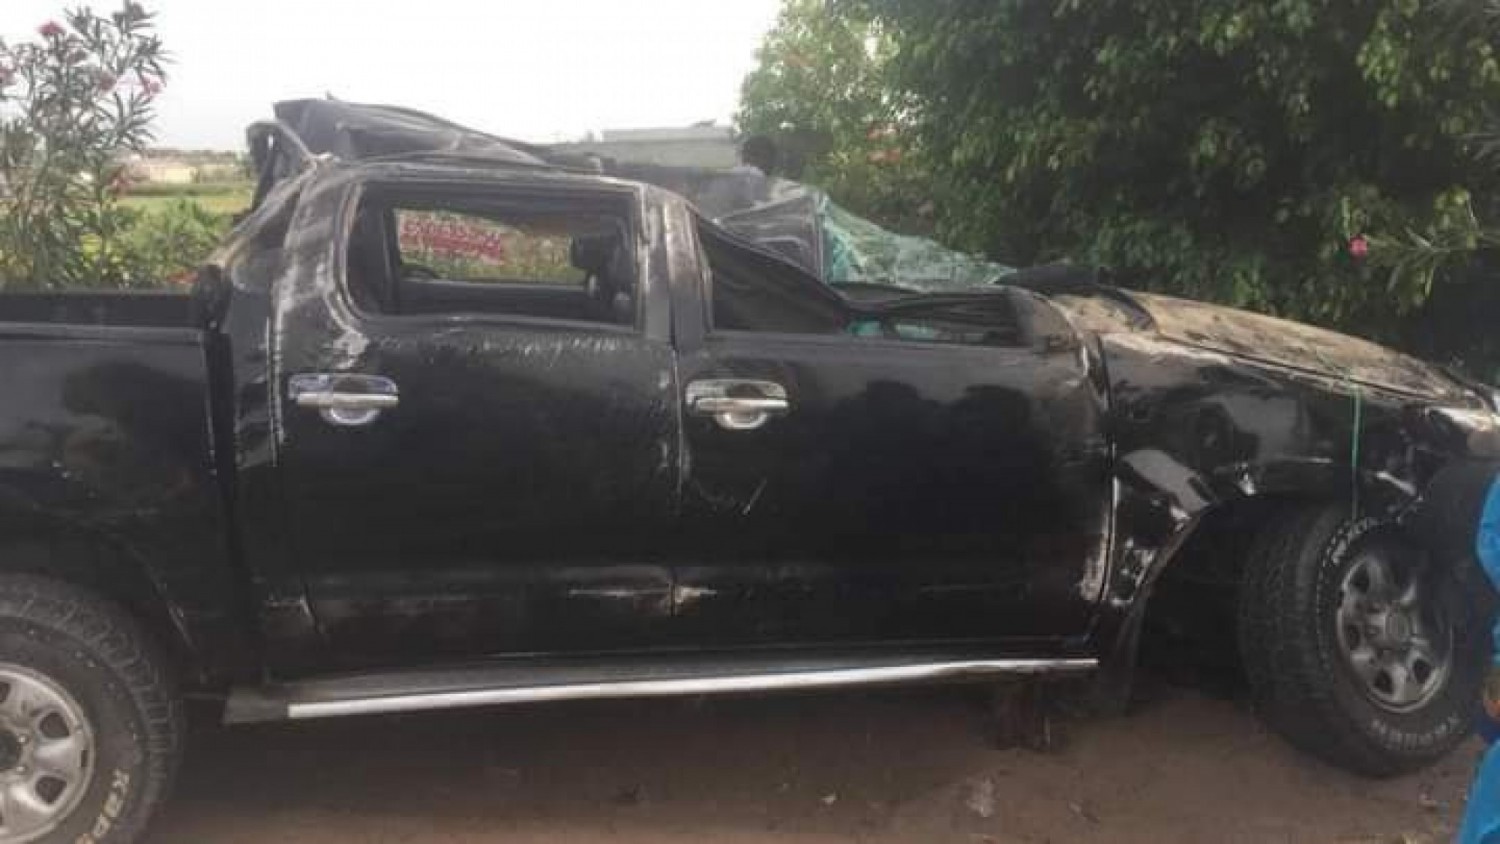 Côte d'Ivoire : Grave accident de circulation sur l'axe menant à l'aéroport Houphouët-Boigny, au moins 1 mort et de nombreux blessés